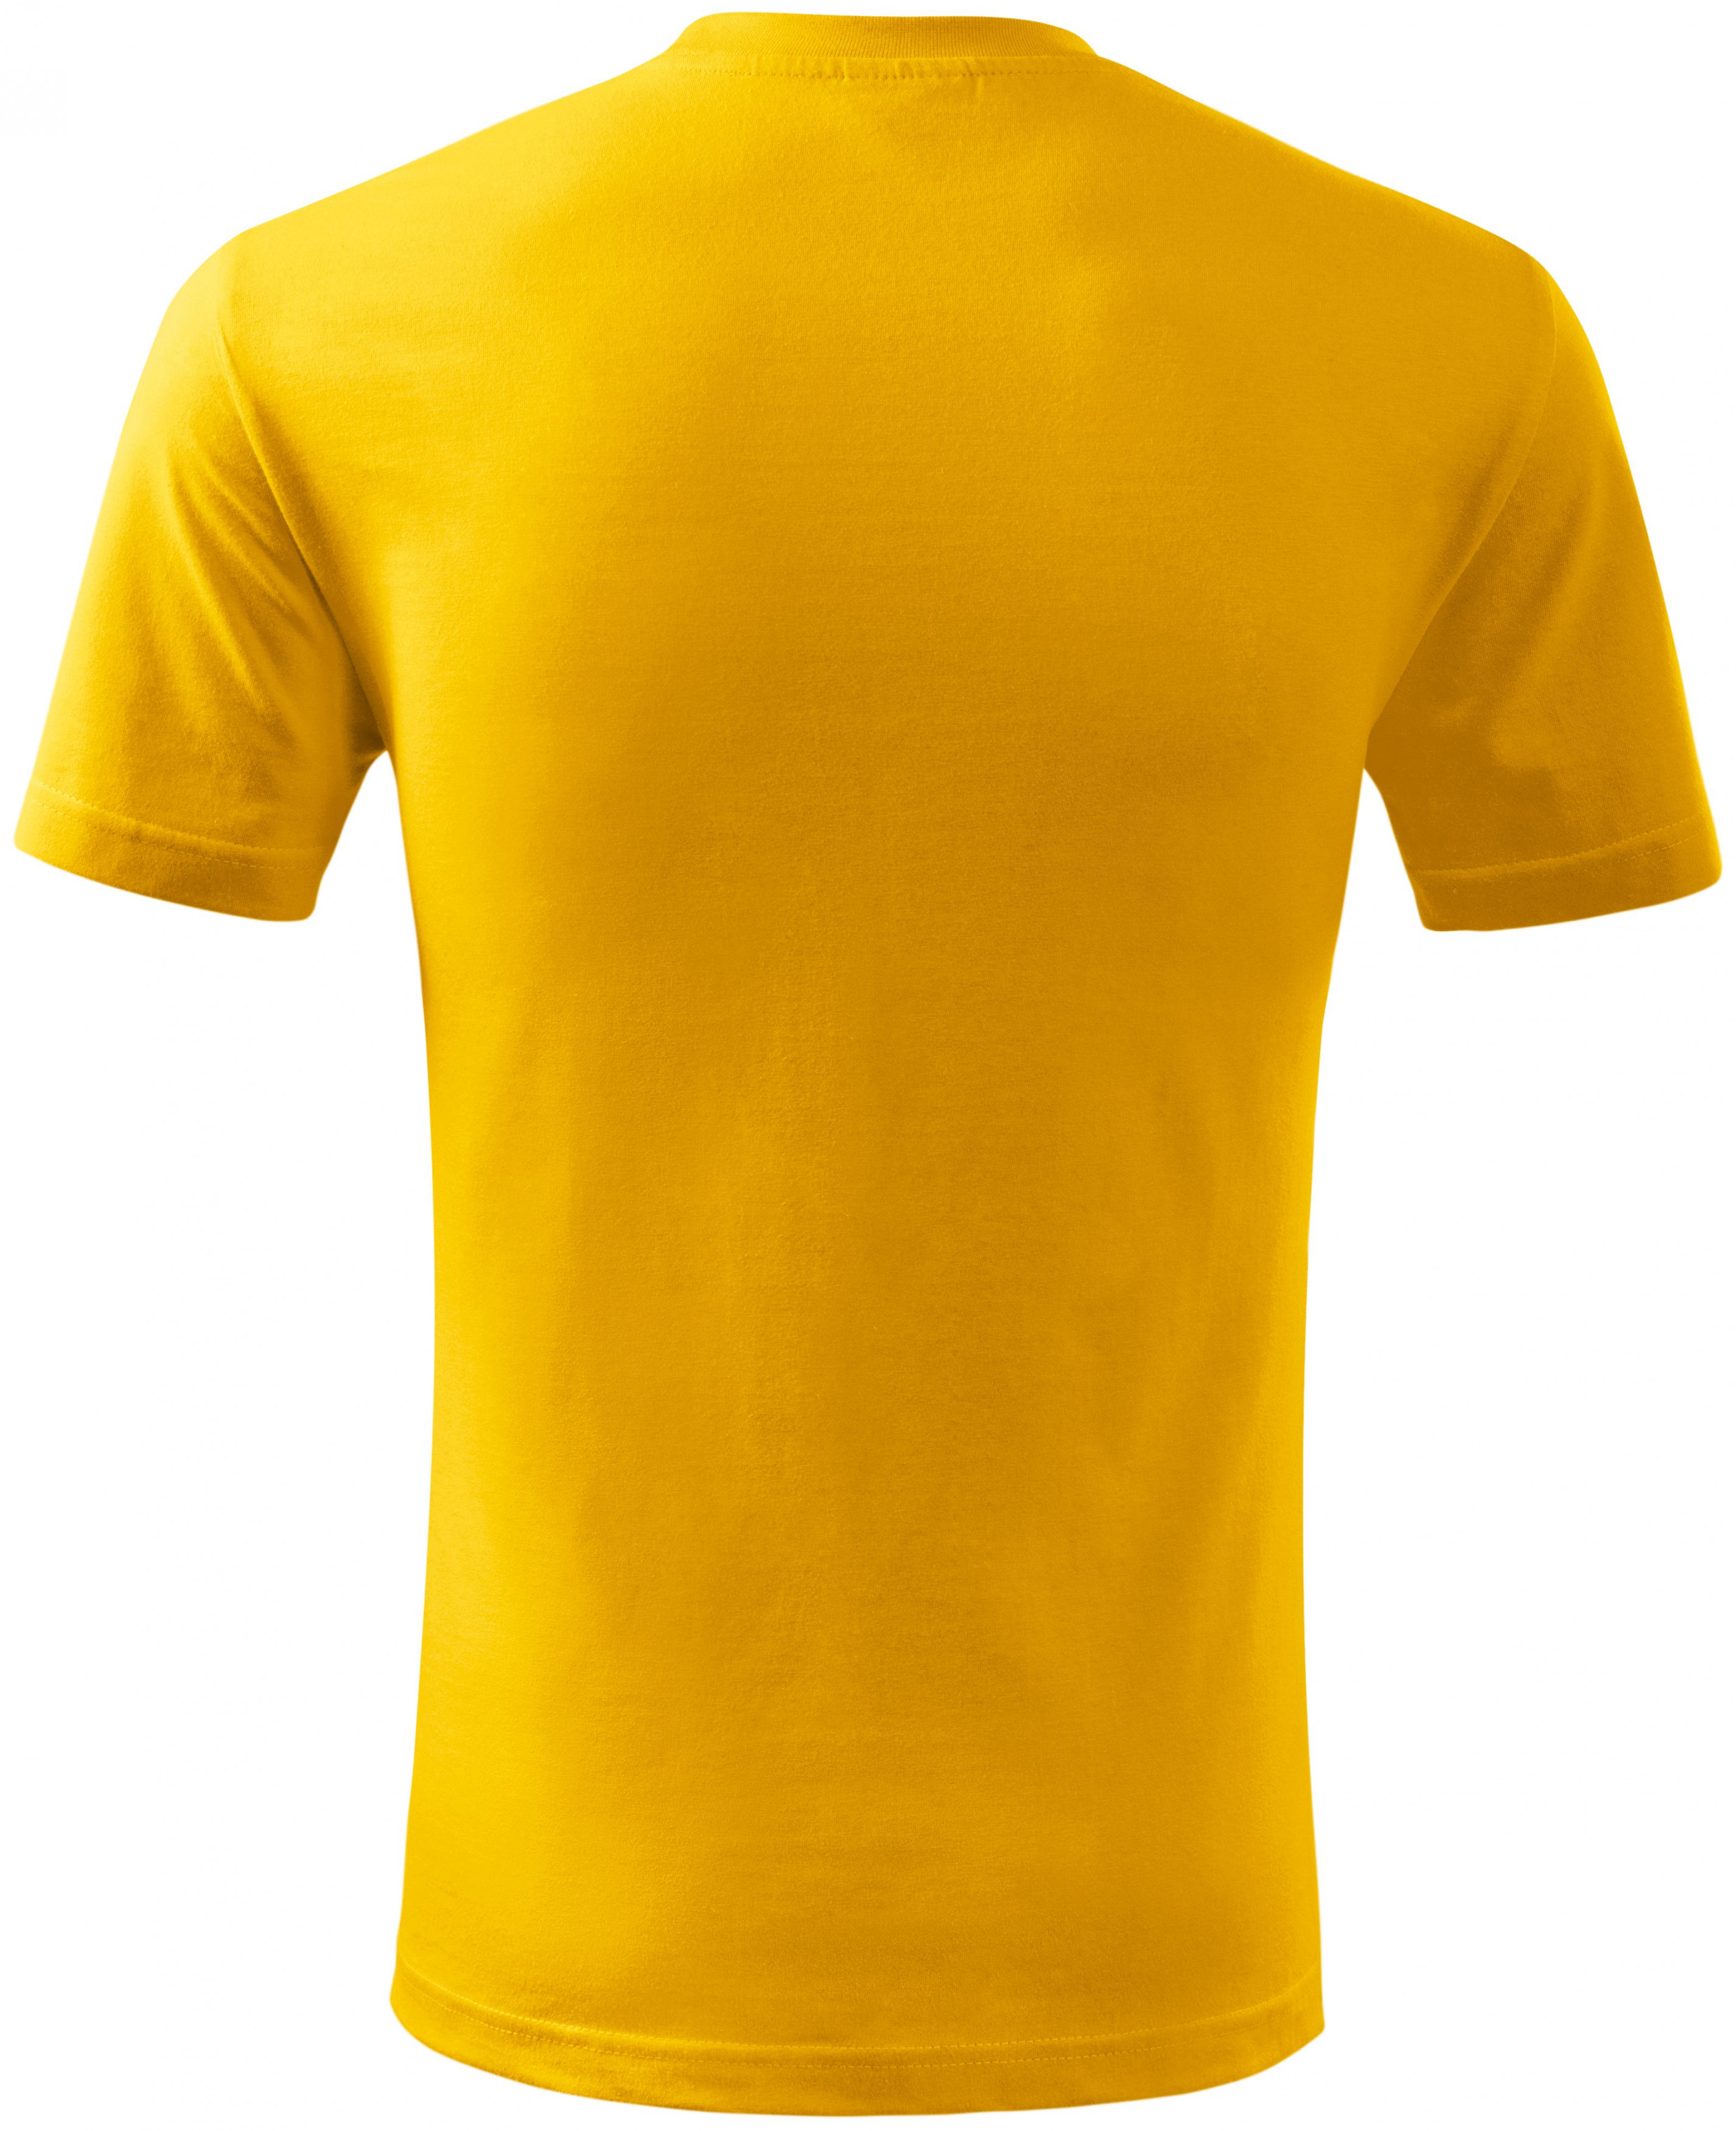 Detské tričko ľahšie, žltá, 122cm / 6rokov